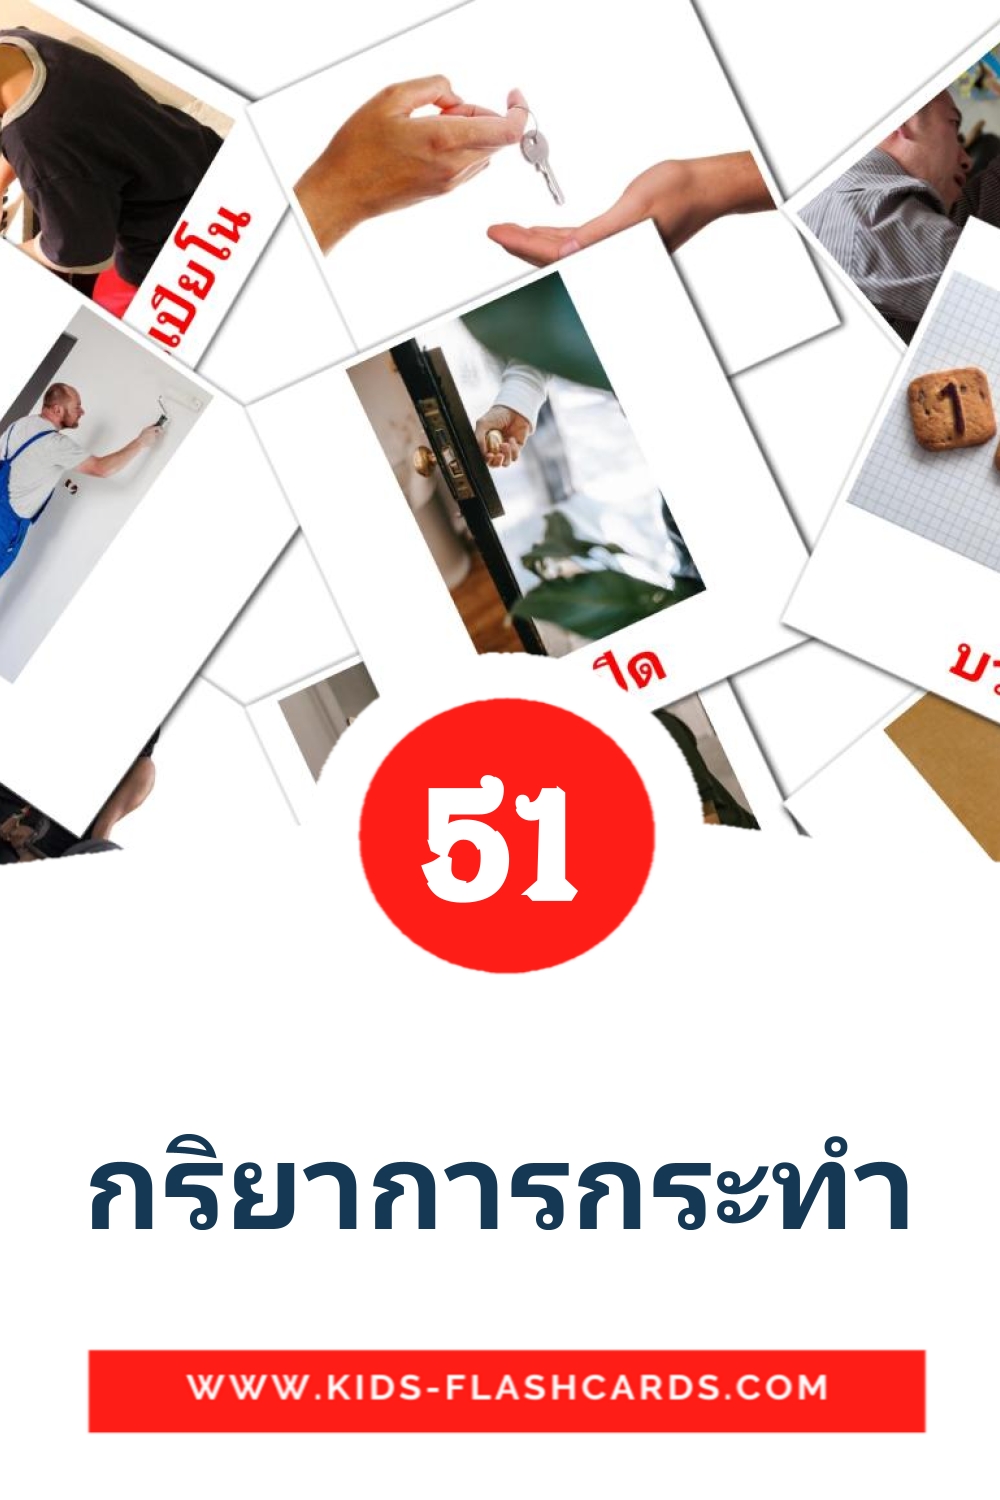 54 กริยาการกระทำ Picture Cards for Kindergarden in thai